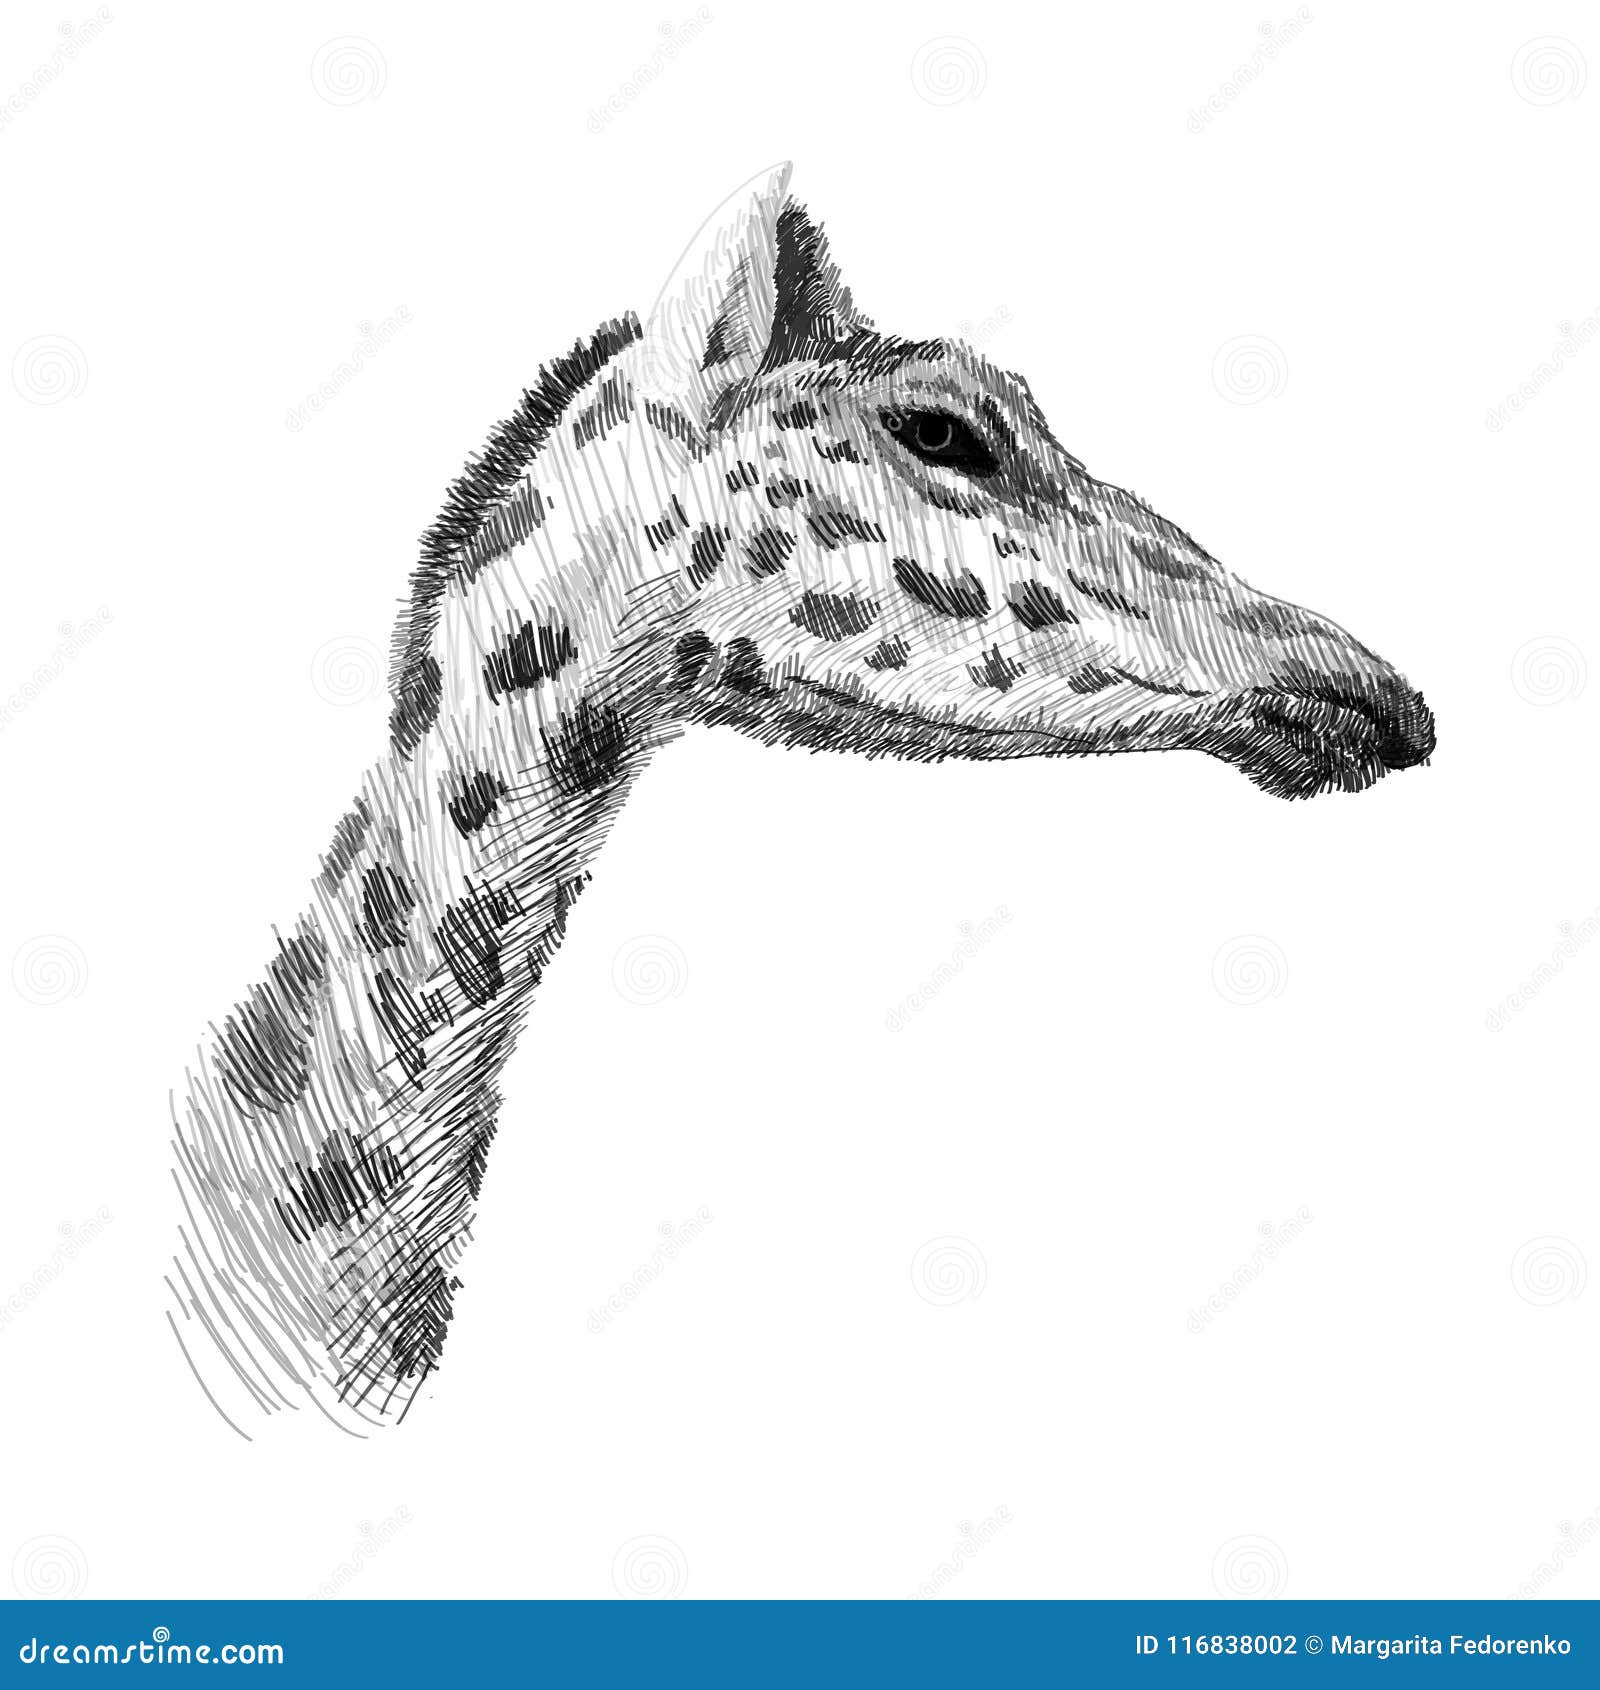 How to Draw a Giraffe Head  HelloArtsy